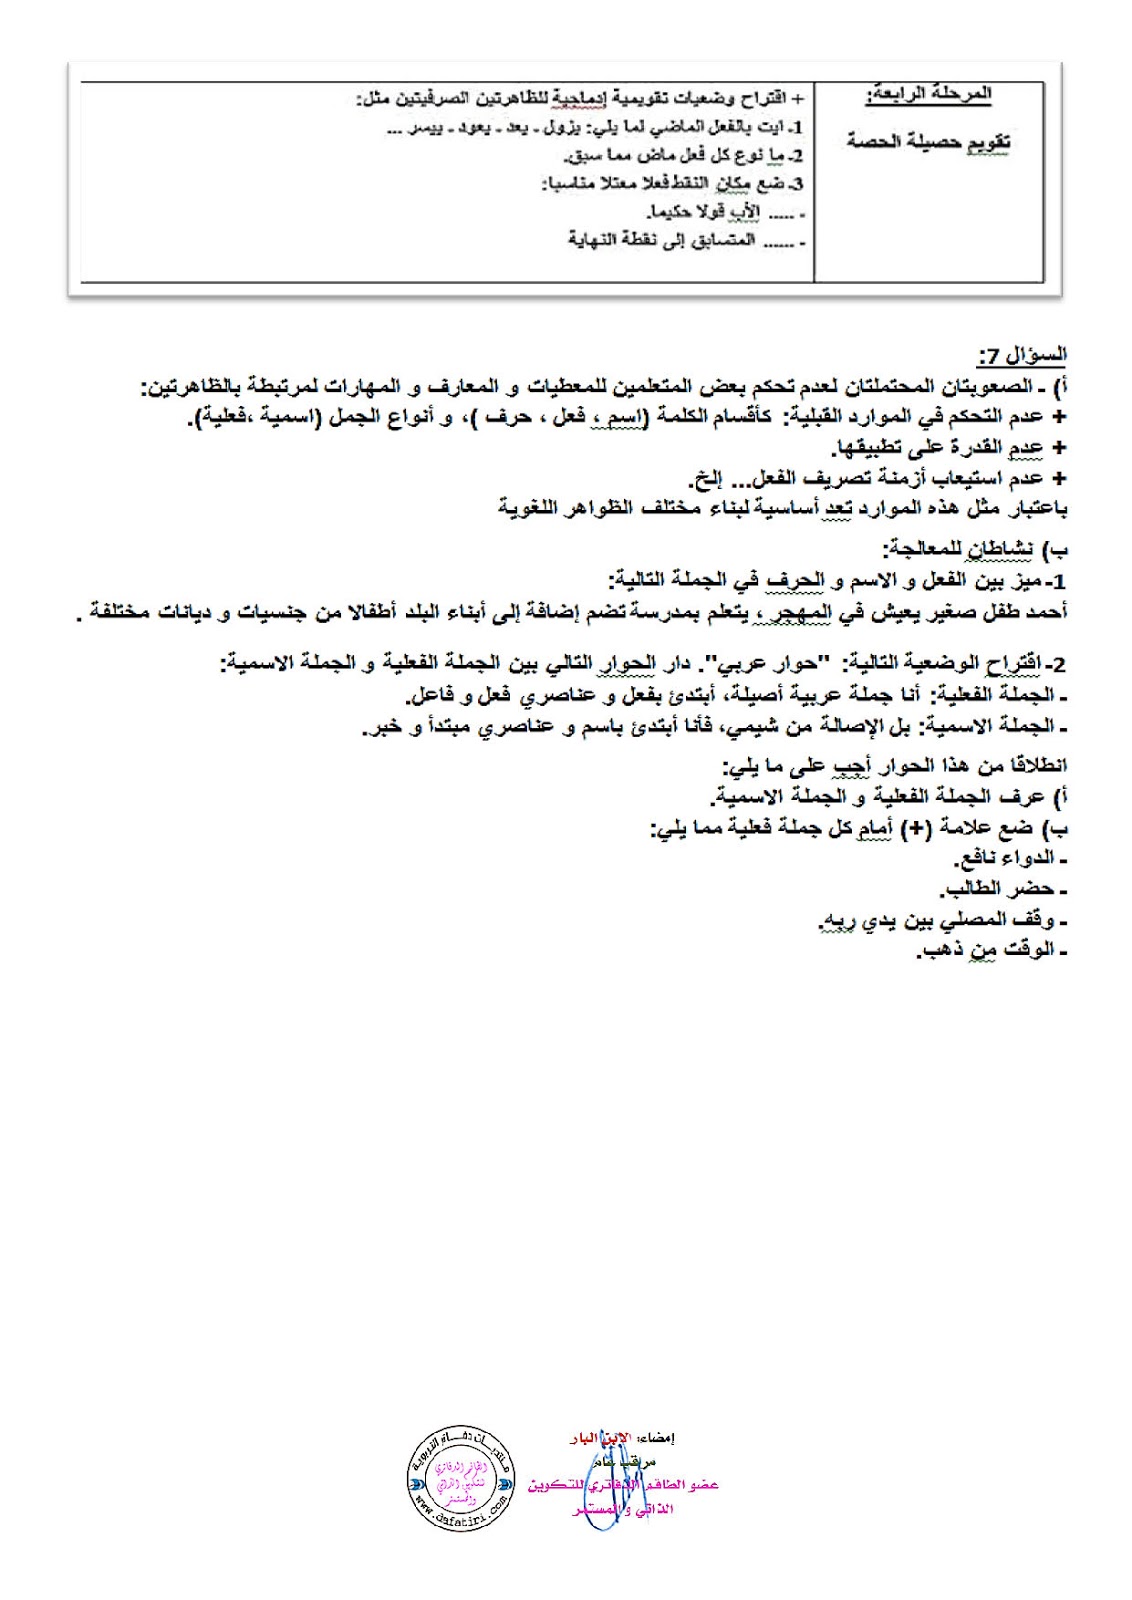 نموذج الإجابة على ديداكتيك اللغة العربية للامتحان المهني 2016